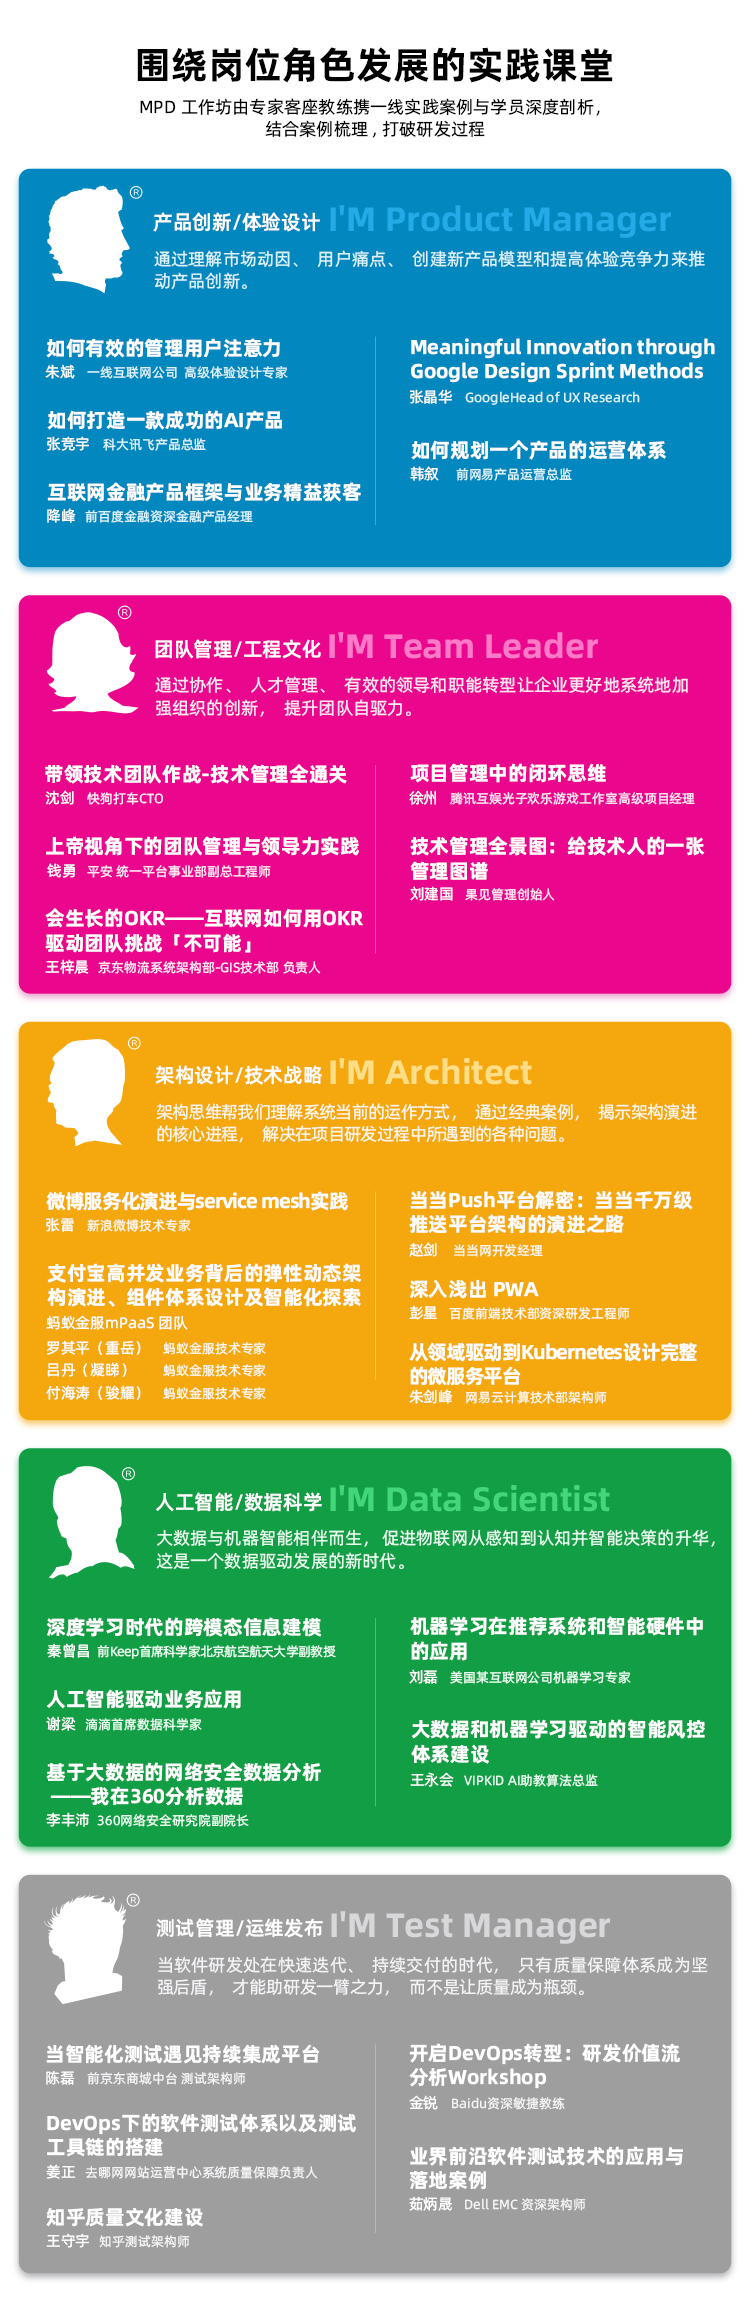 第43届MPD软件工作坊本周末北京举行